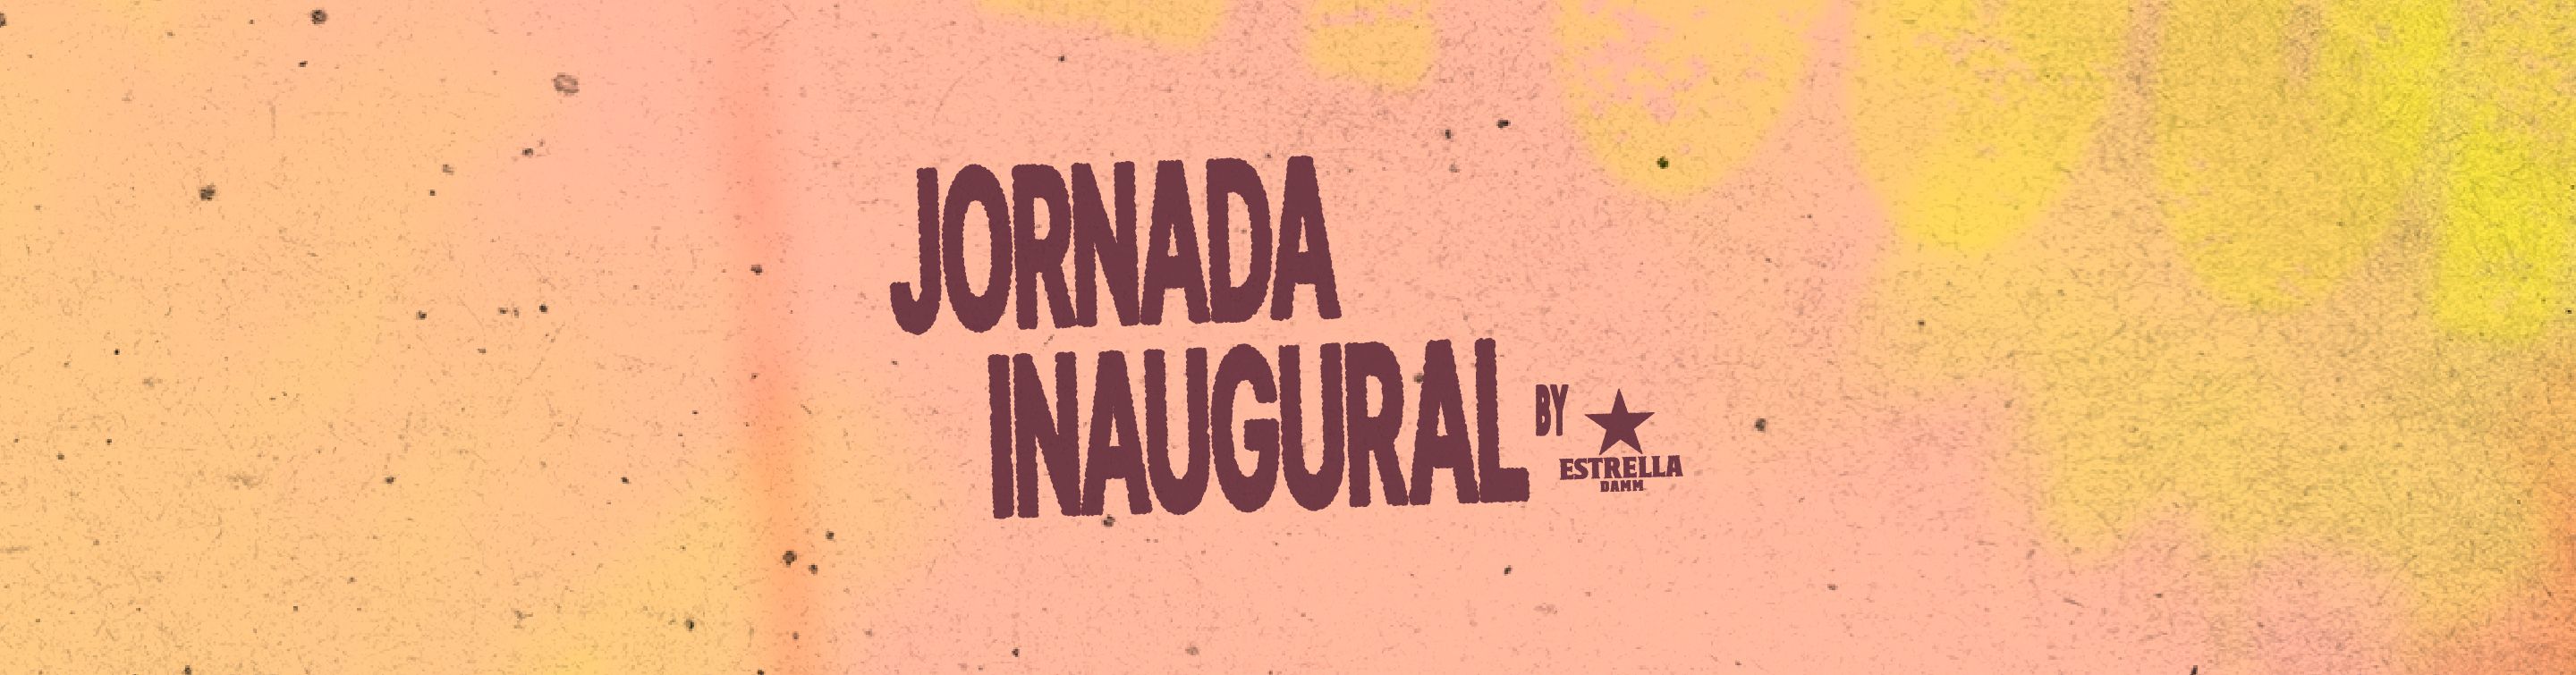 Jornada Inaugural by Estrella Damm